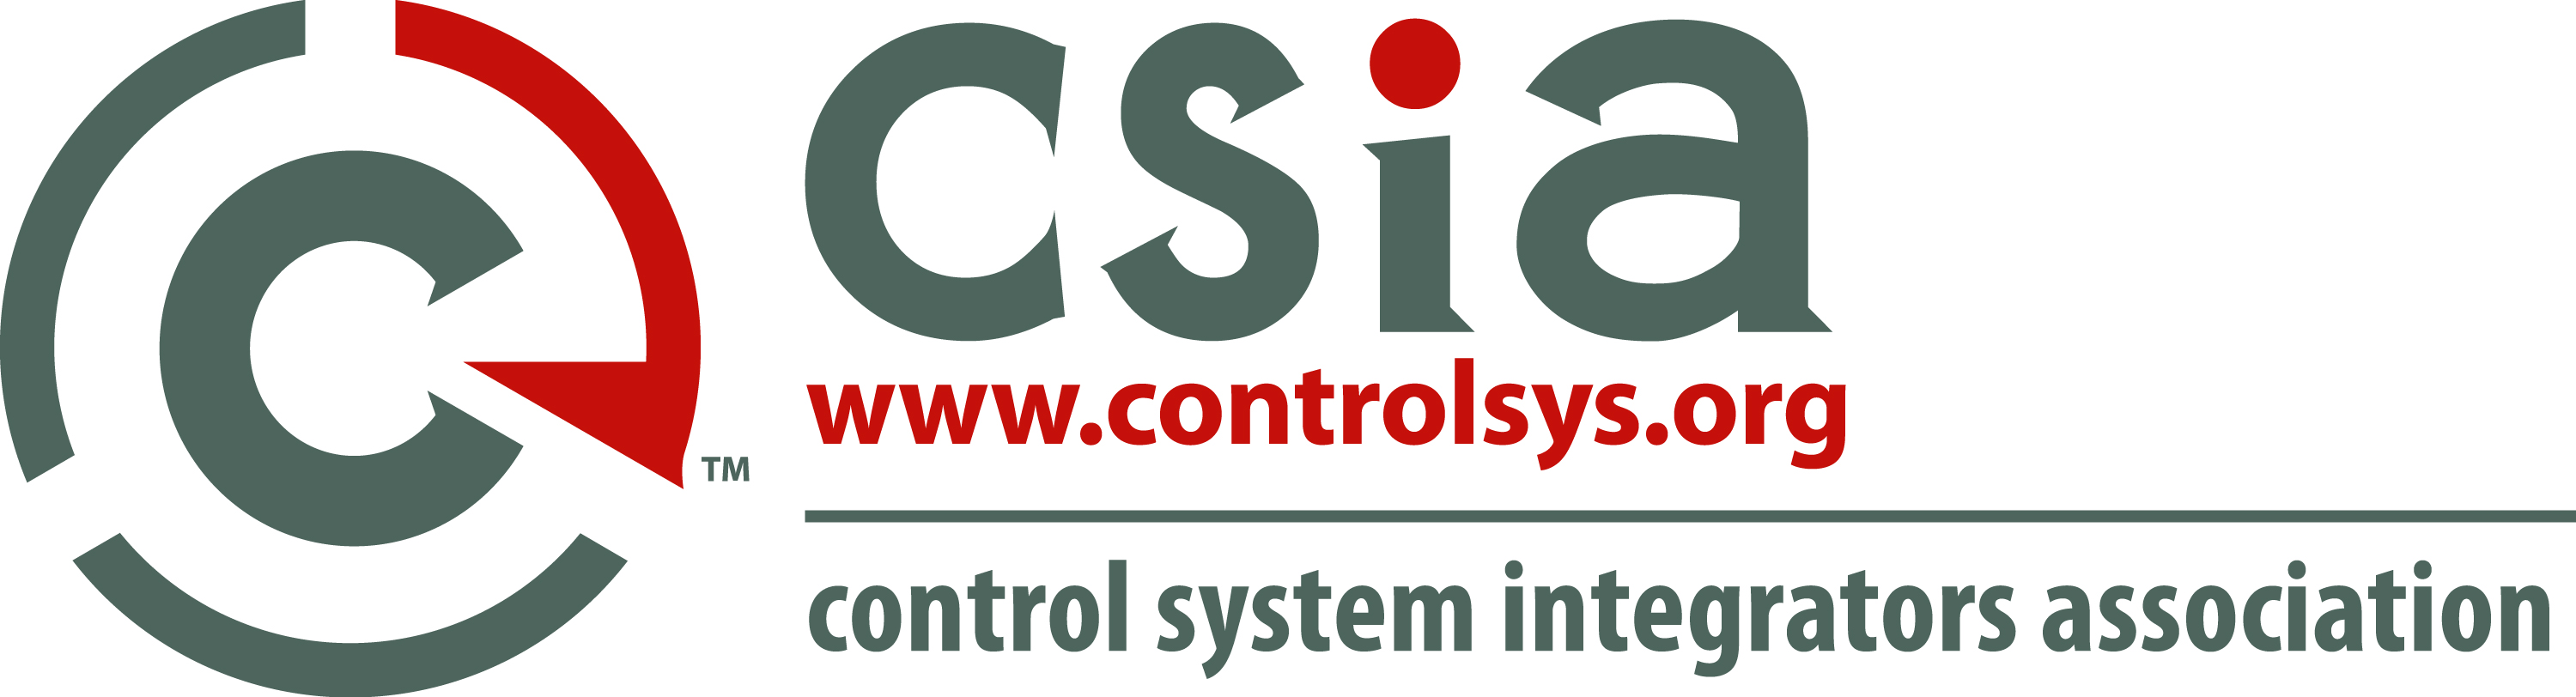 CSIA-logo